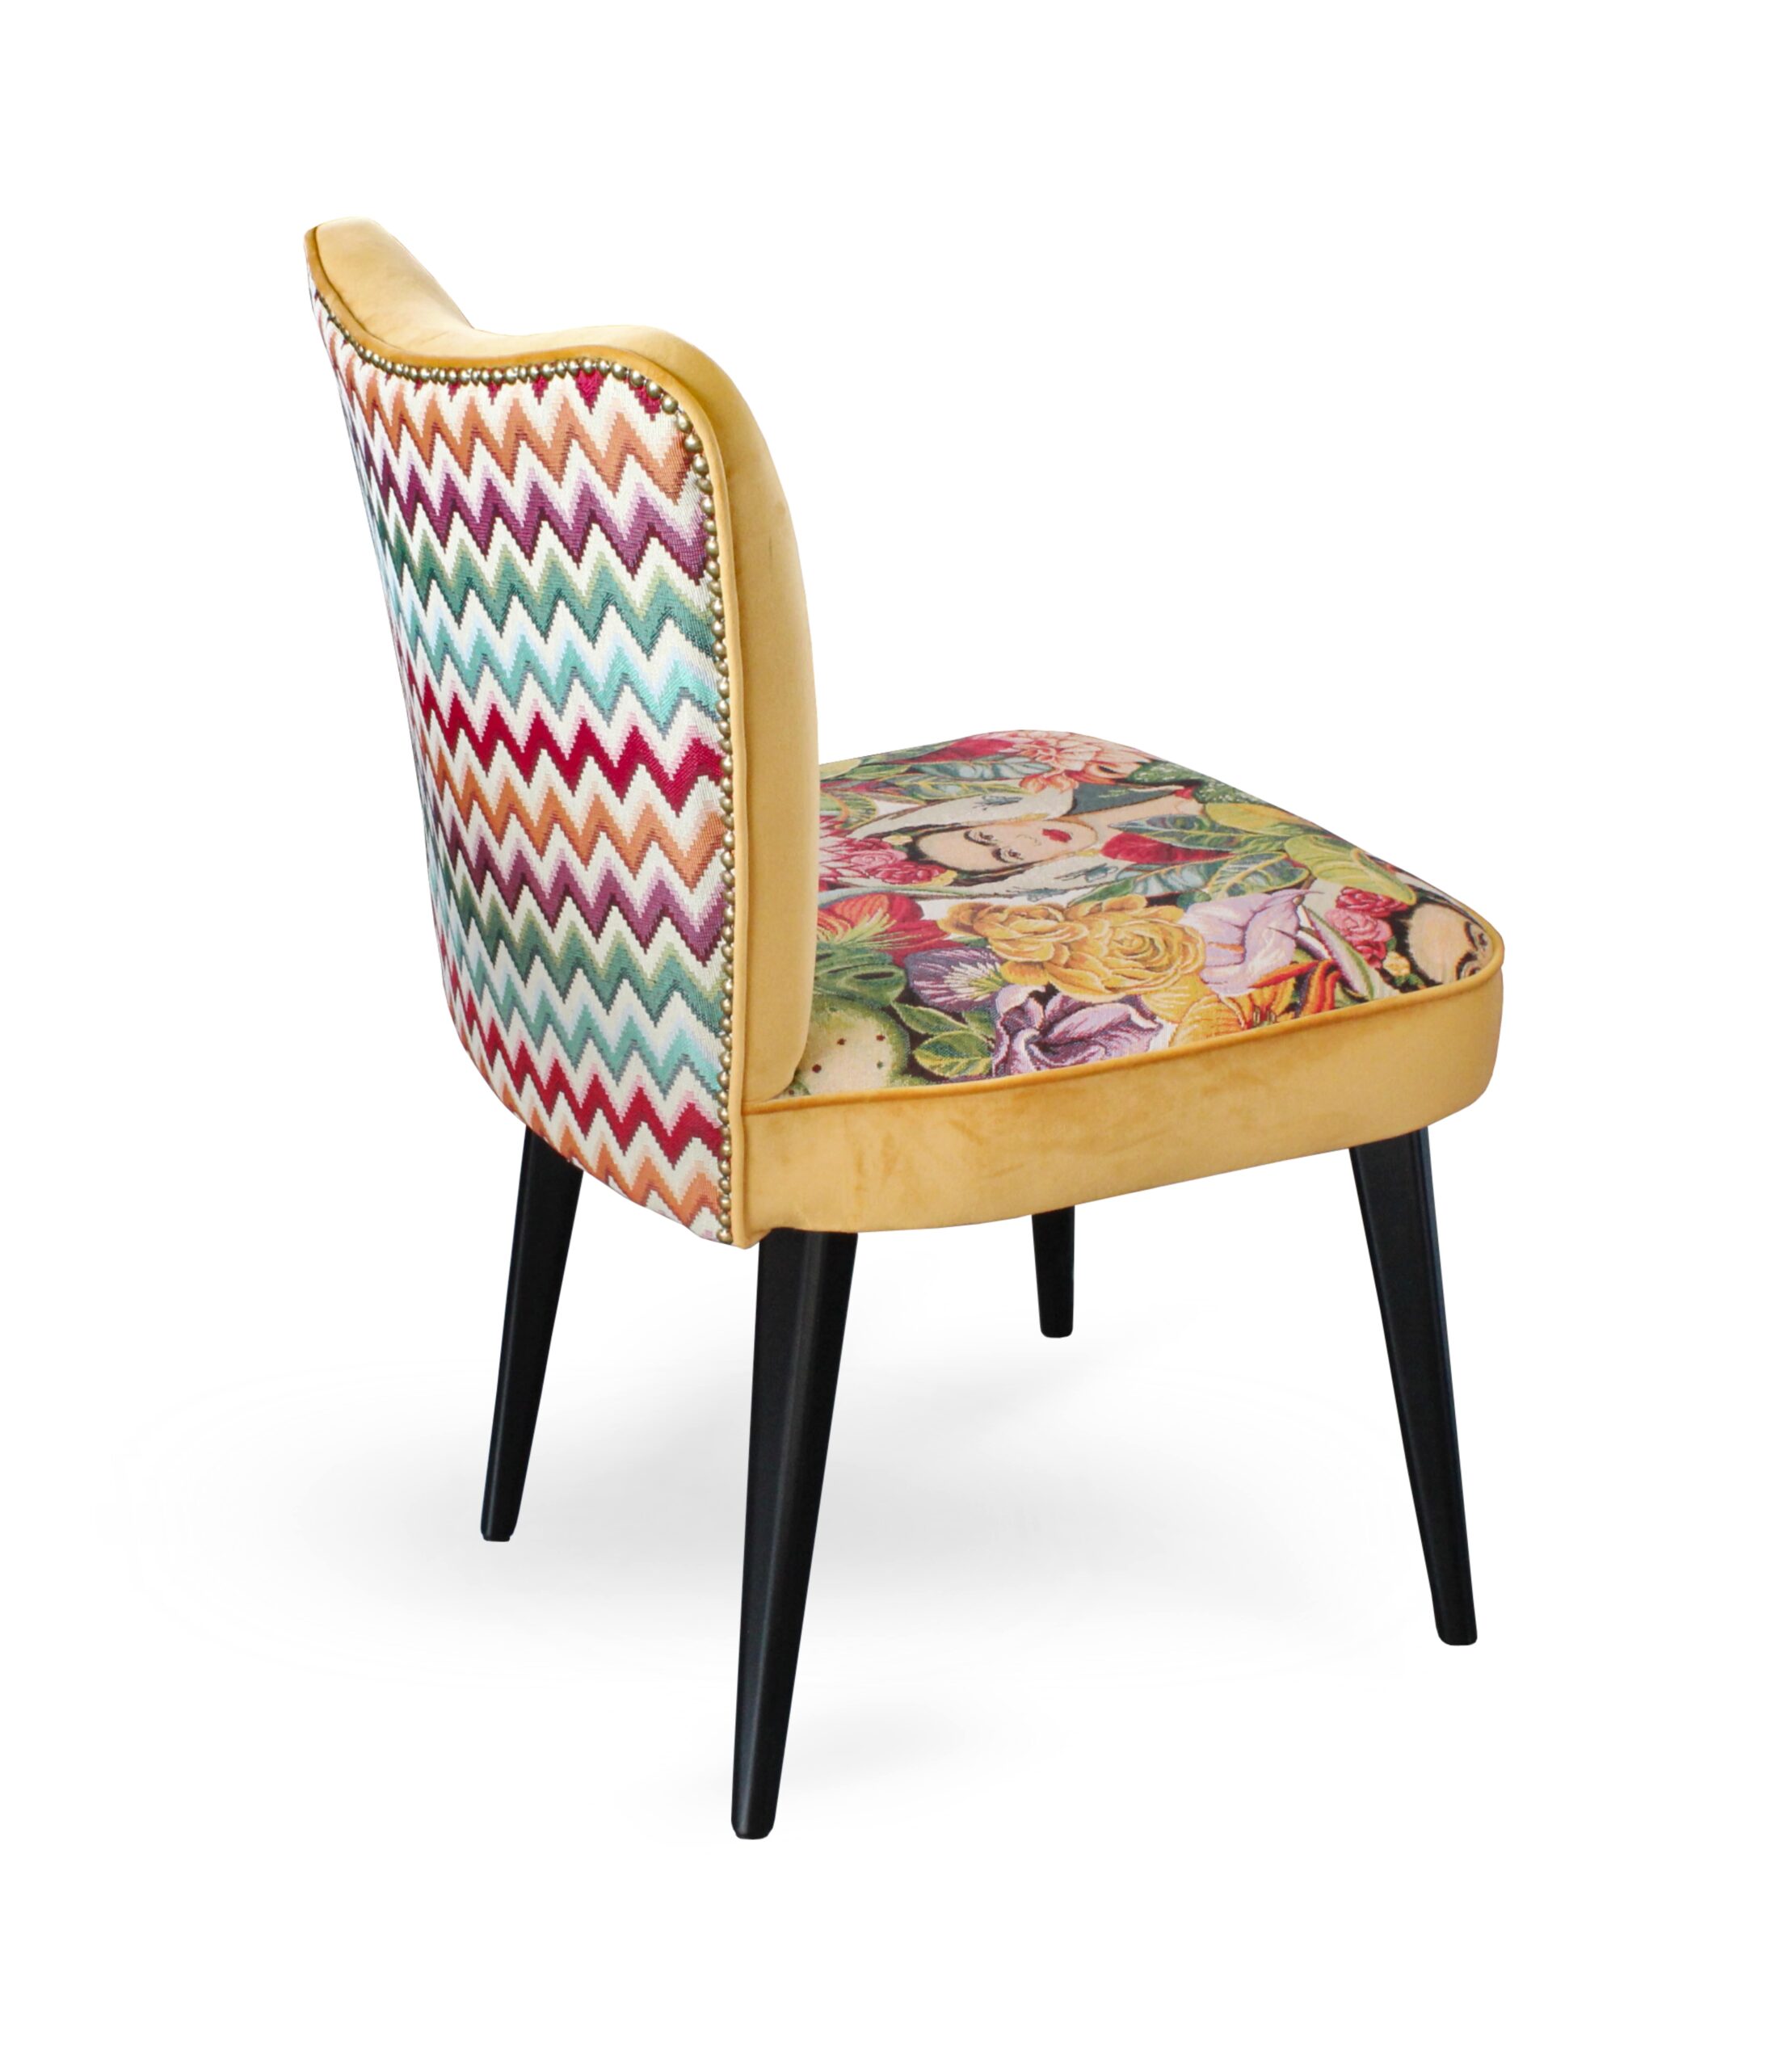 Saretina è una sedia imbottita dalla struttura in polipropilene, con  cuscino in velluto di ciniglia abbinato tono su tono.